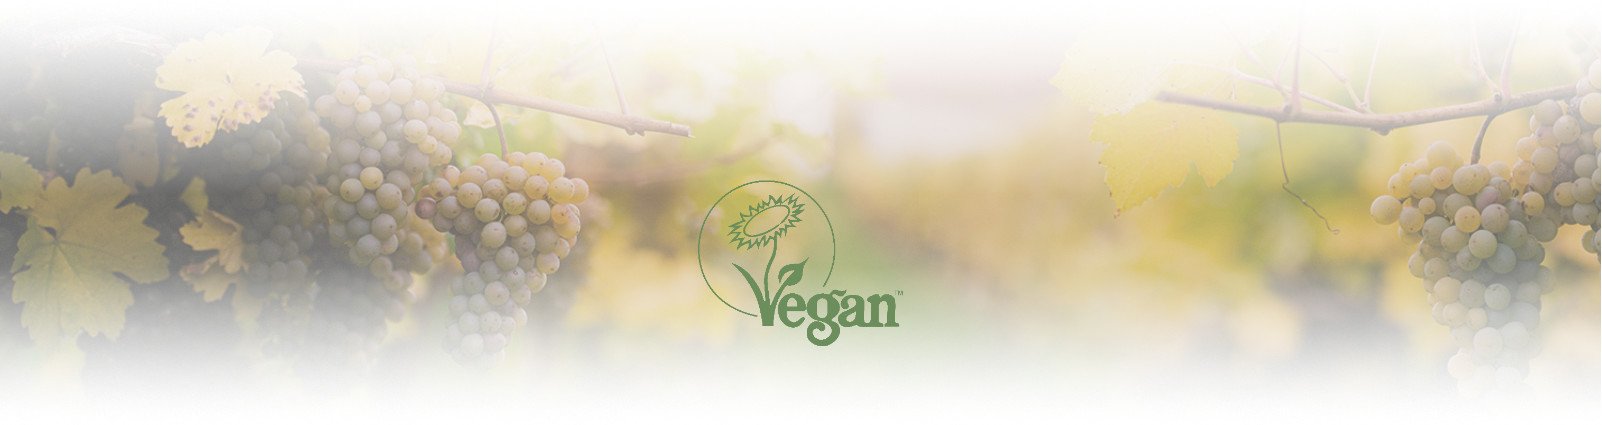 banner-vegano3